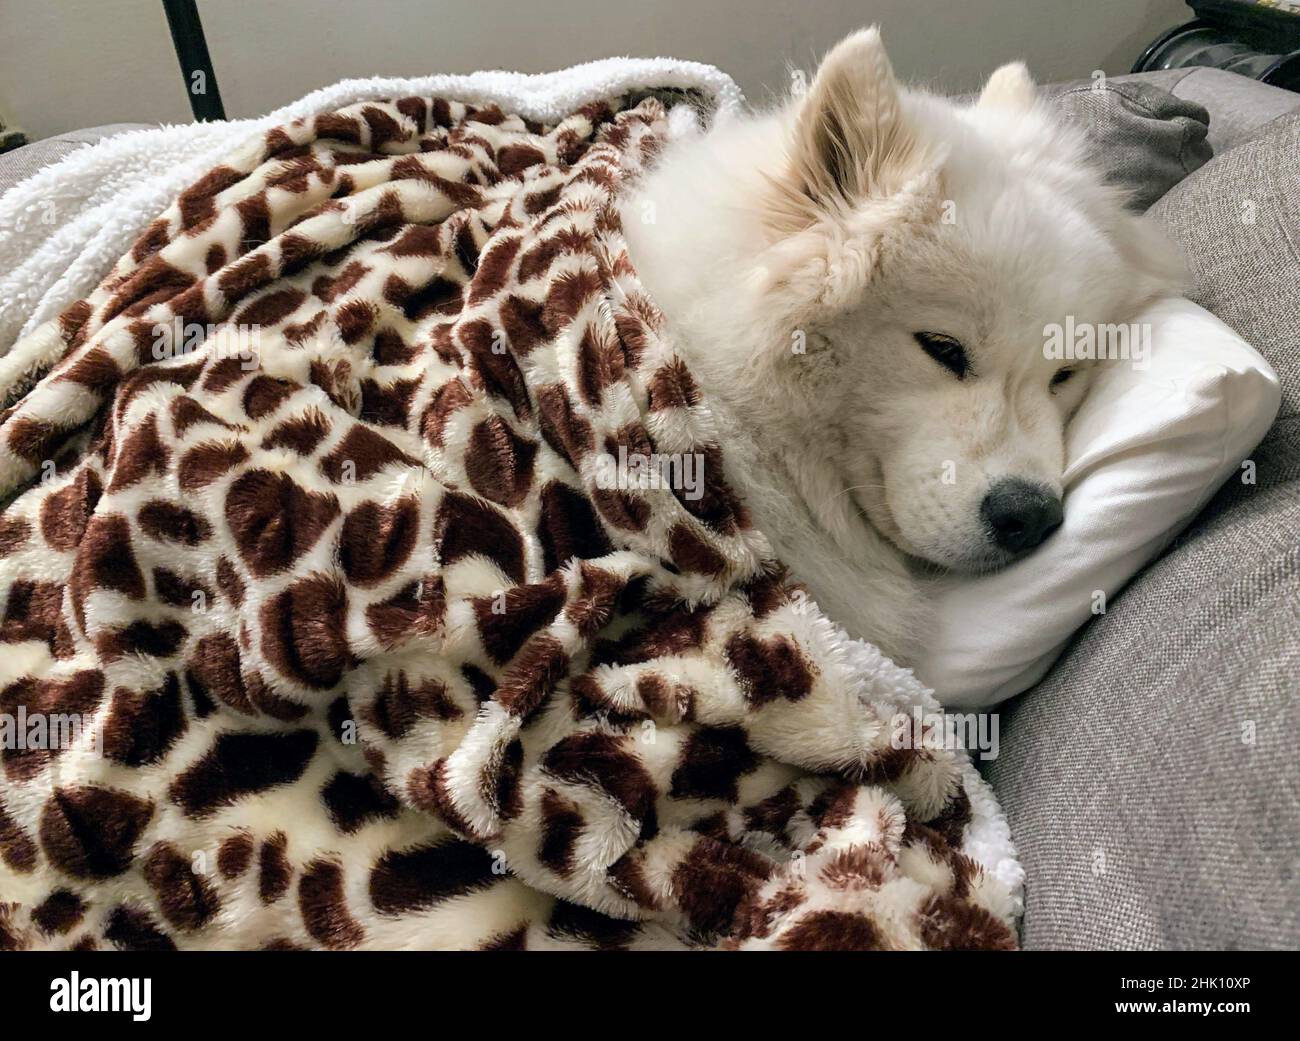 sad samoyed dog under blanket Stock Photo